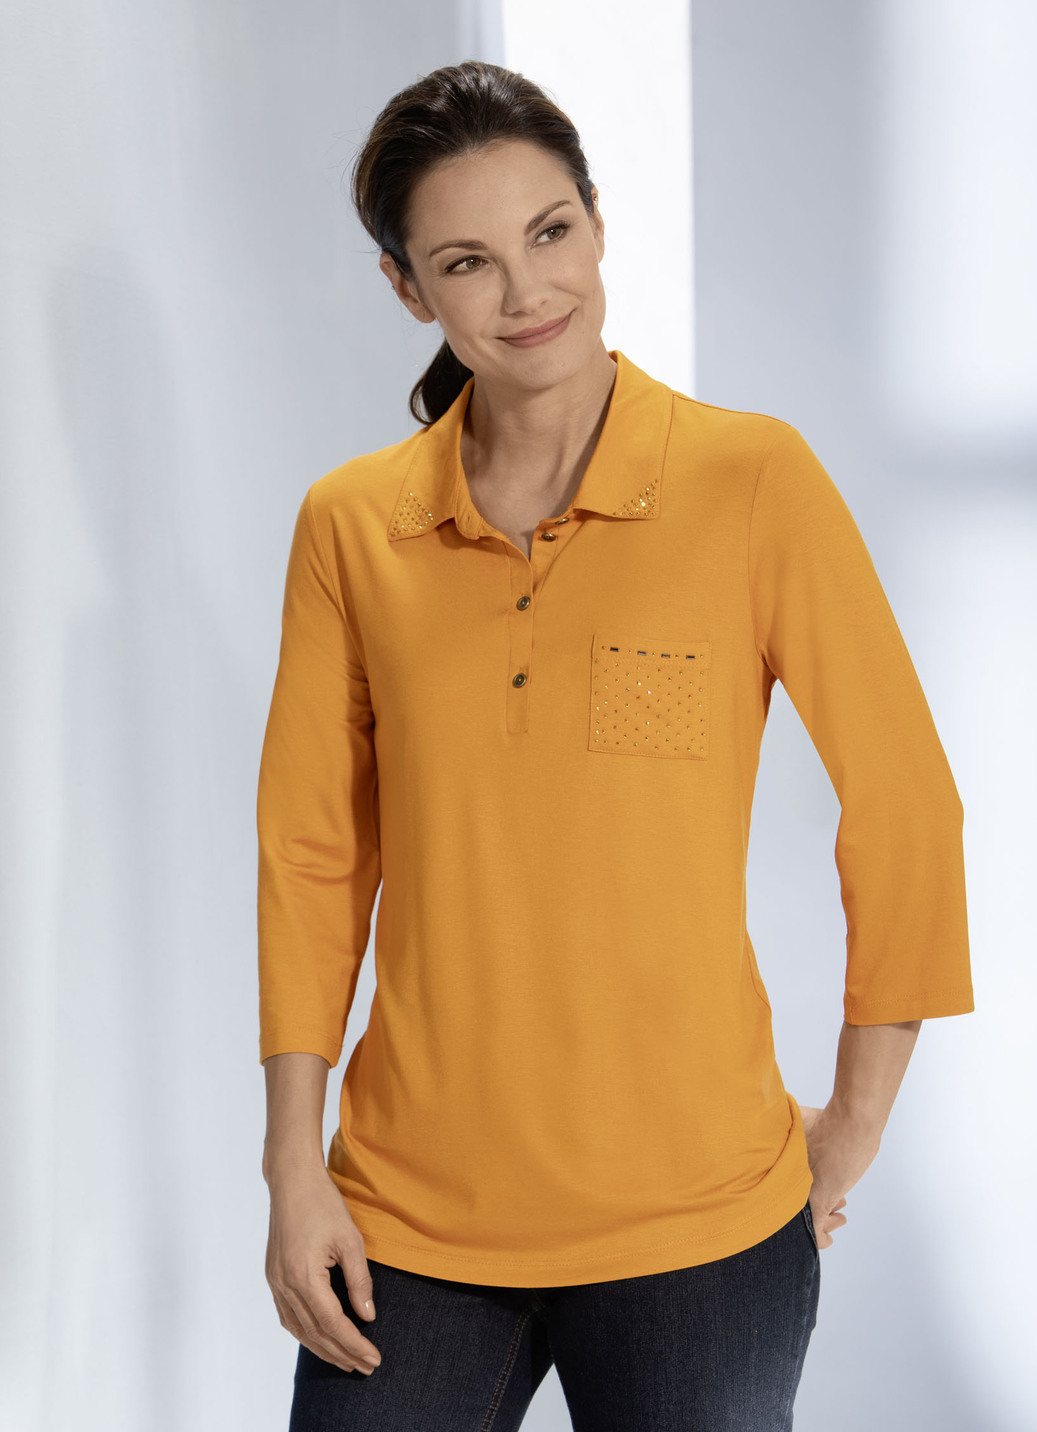 Poloshirt mit Strasszier am Polokragen in 3 Farben, Mandarine, Größe 48 von BADER